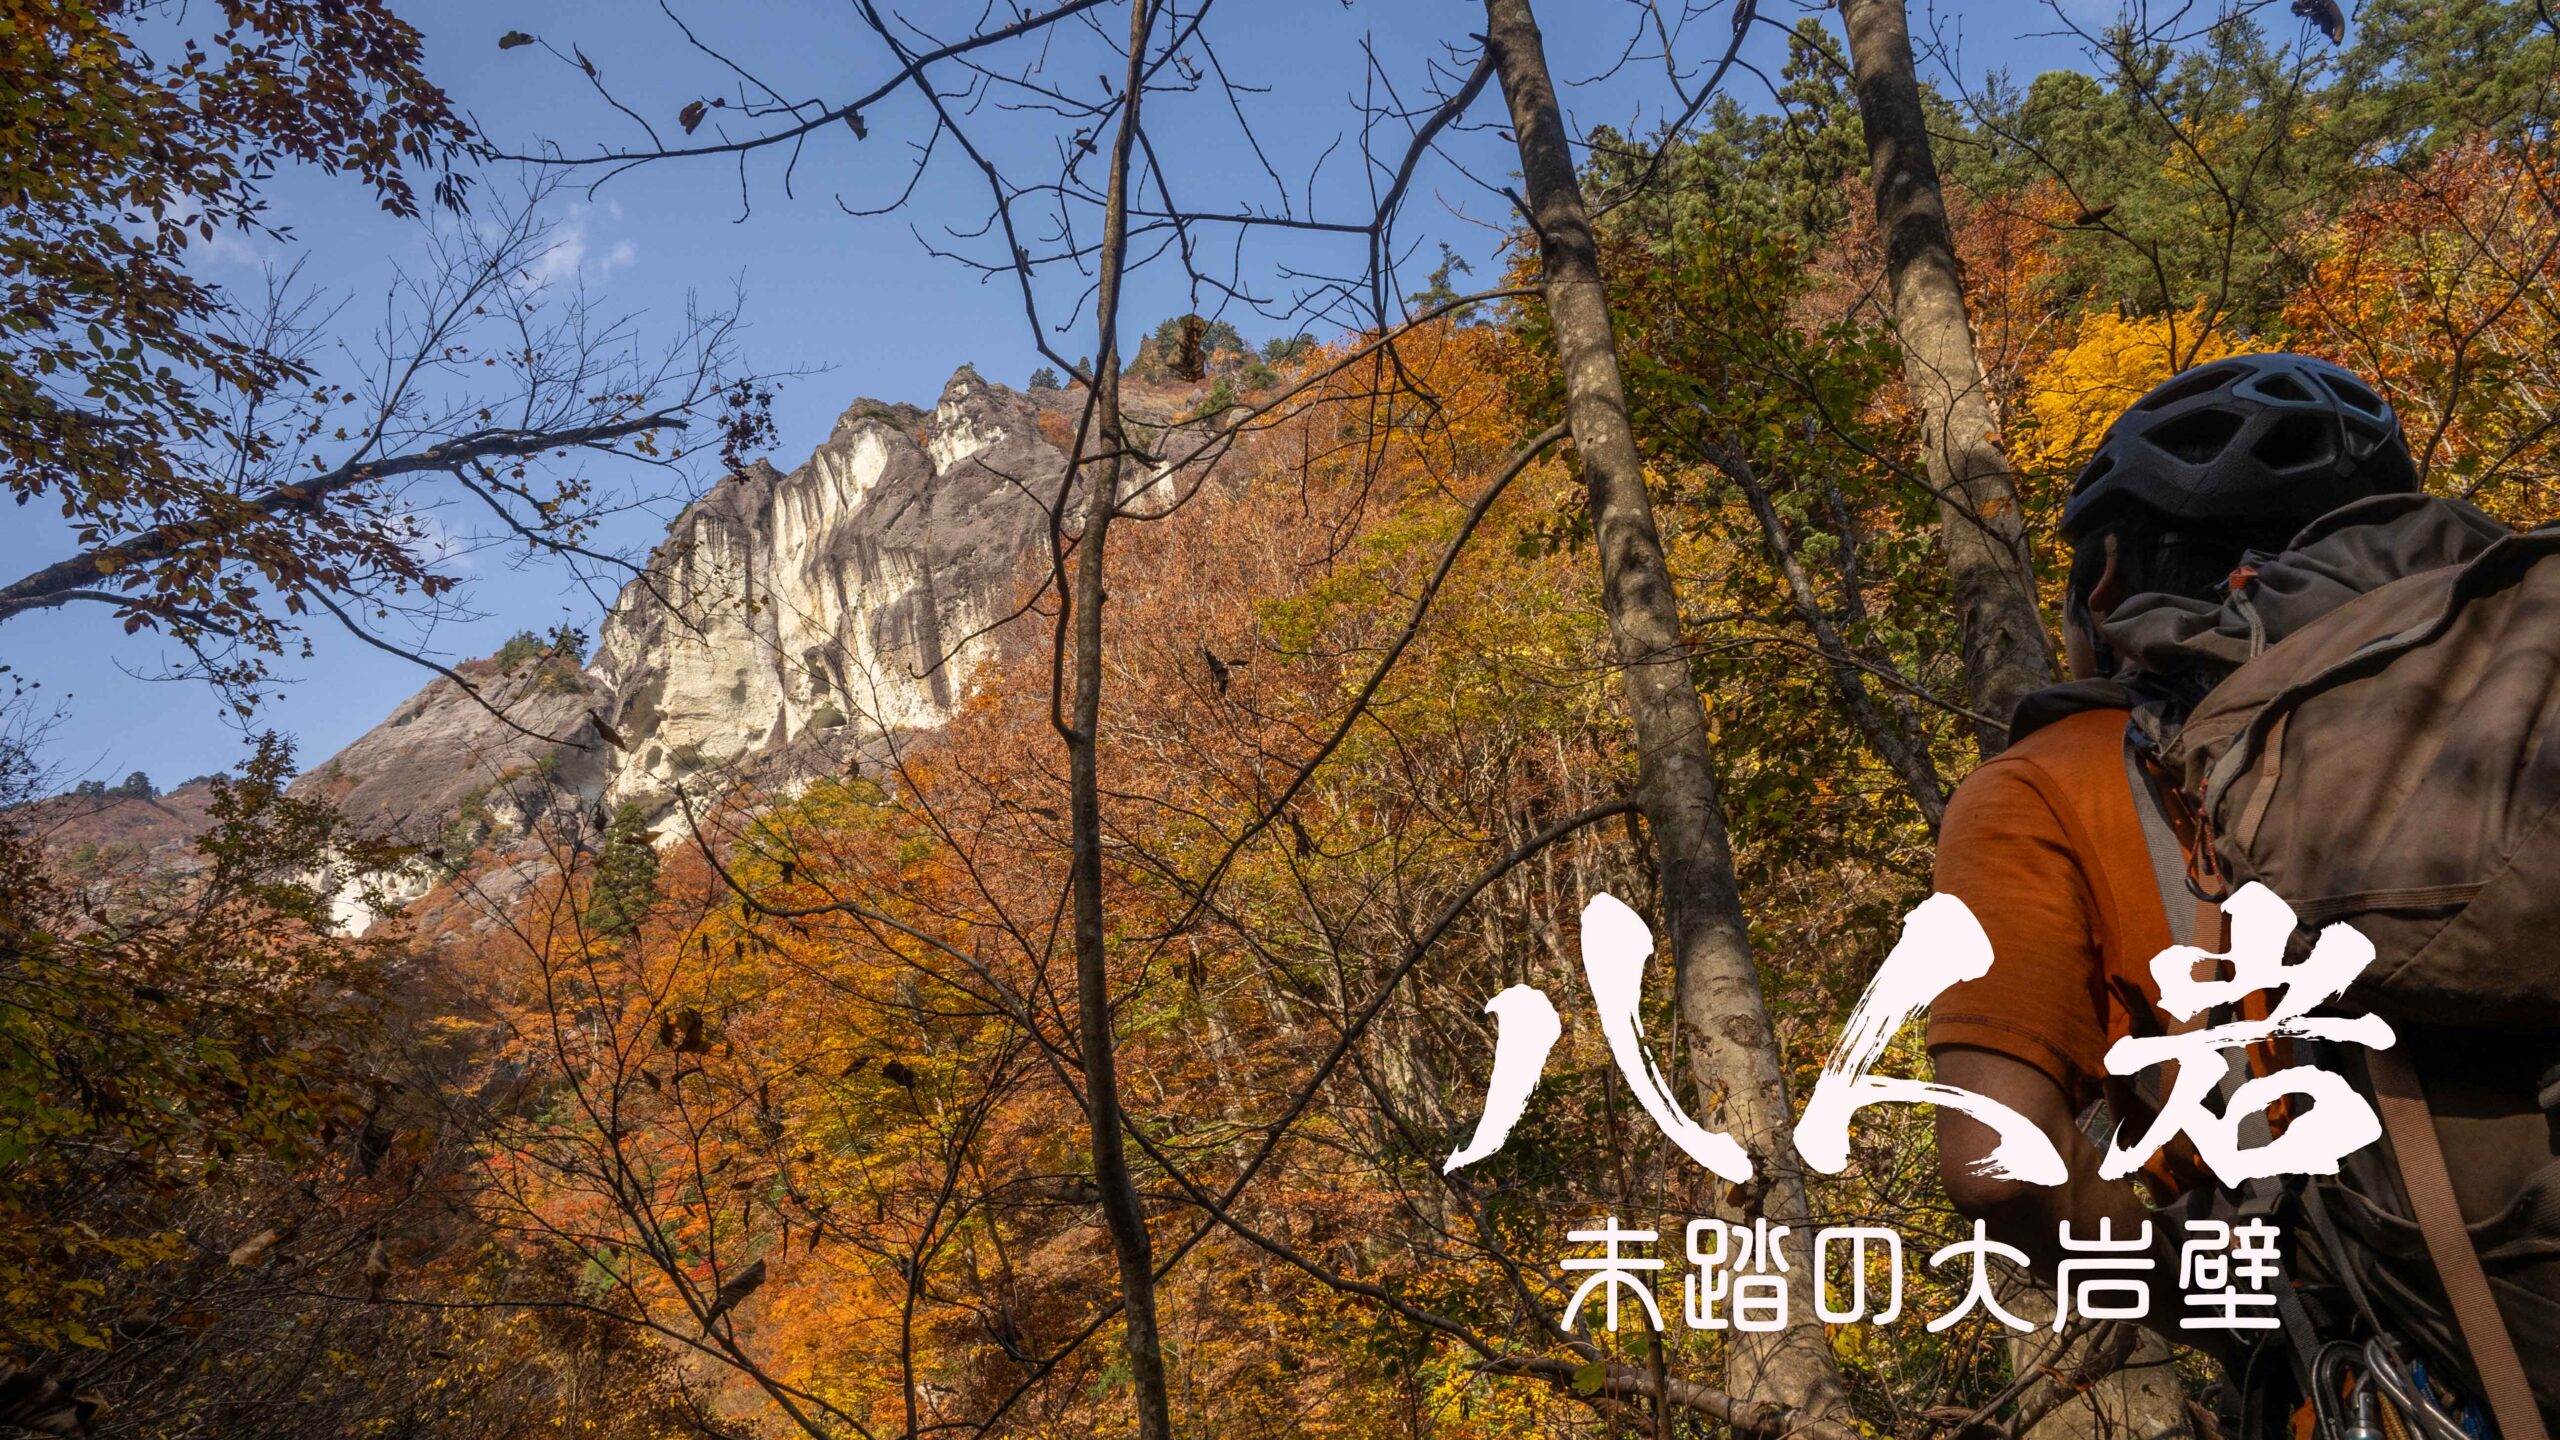 八人岩と謎のチムニー　～新潟県・阿賀町～